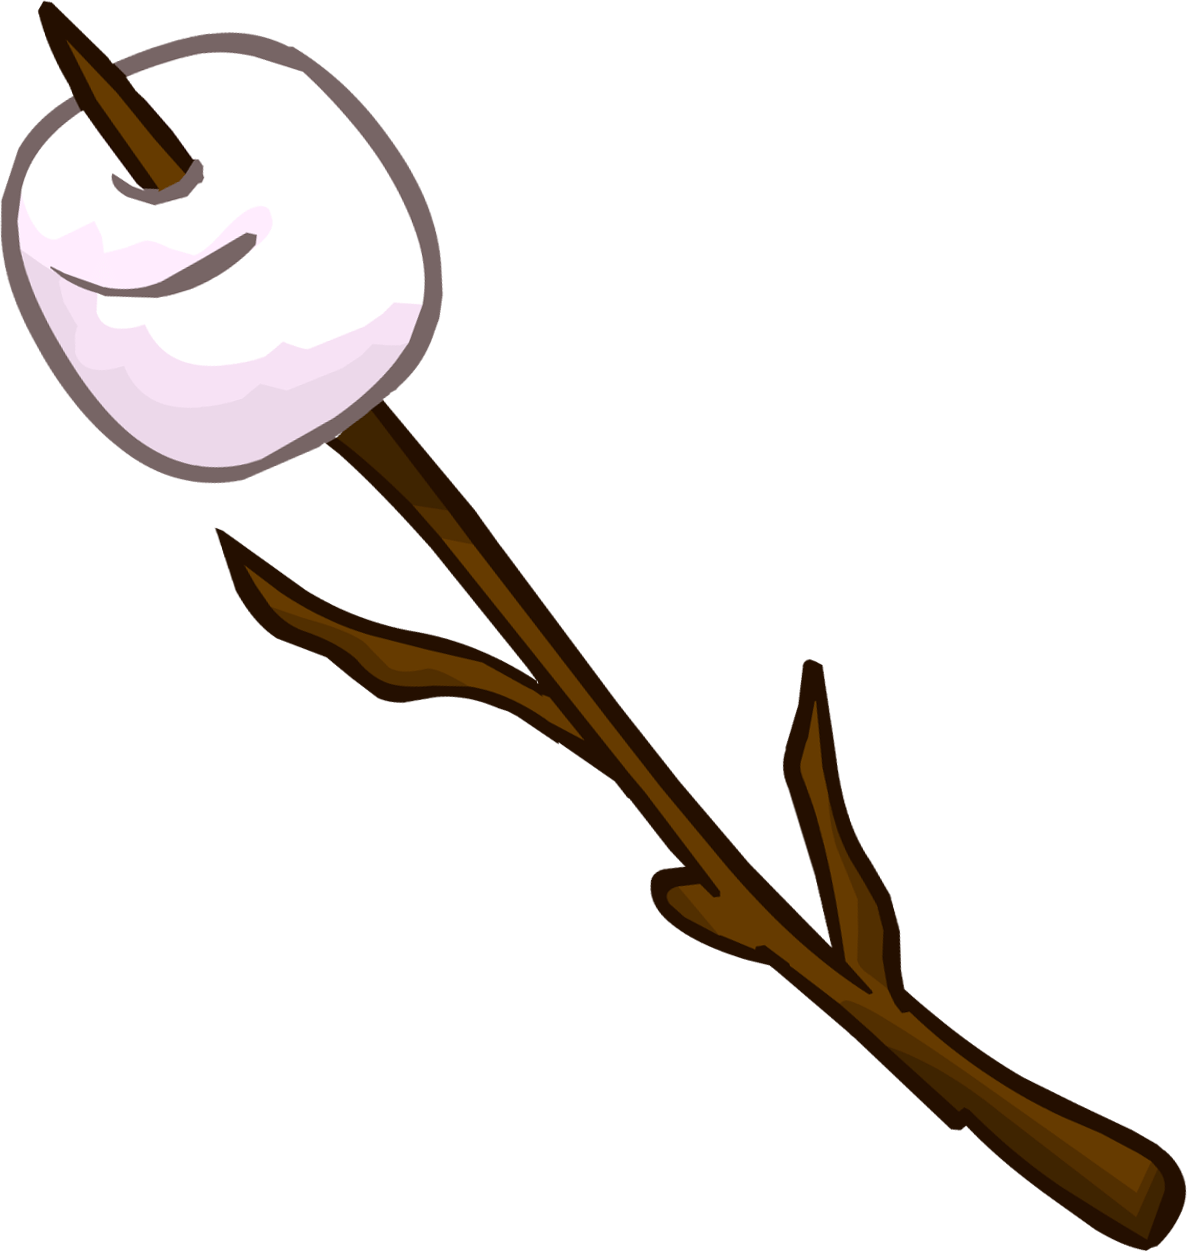 Marshmallow - Cartoon Marshmallow On A Stick (1187x1252)